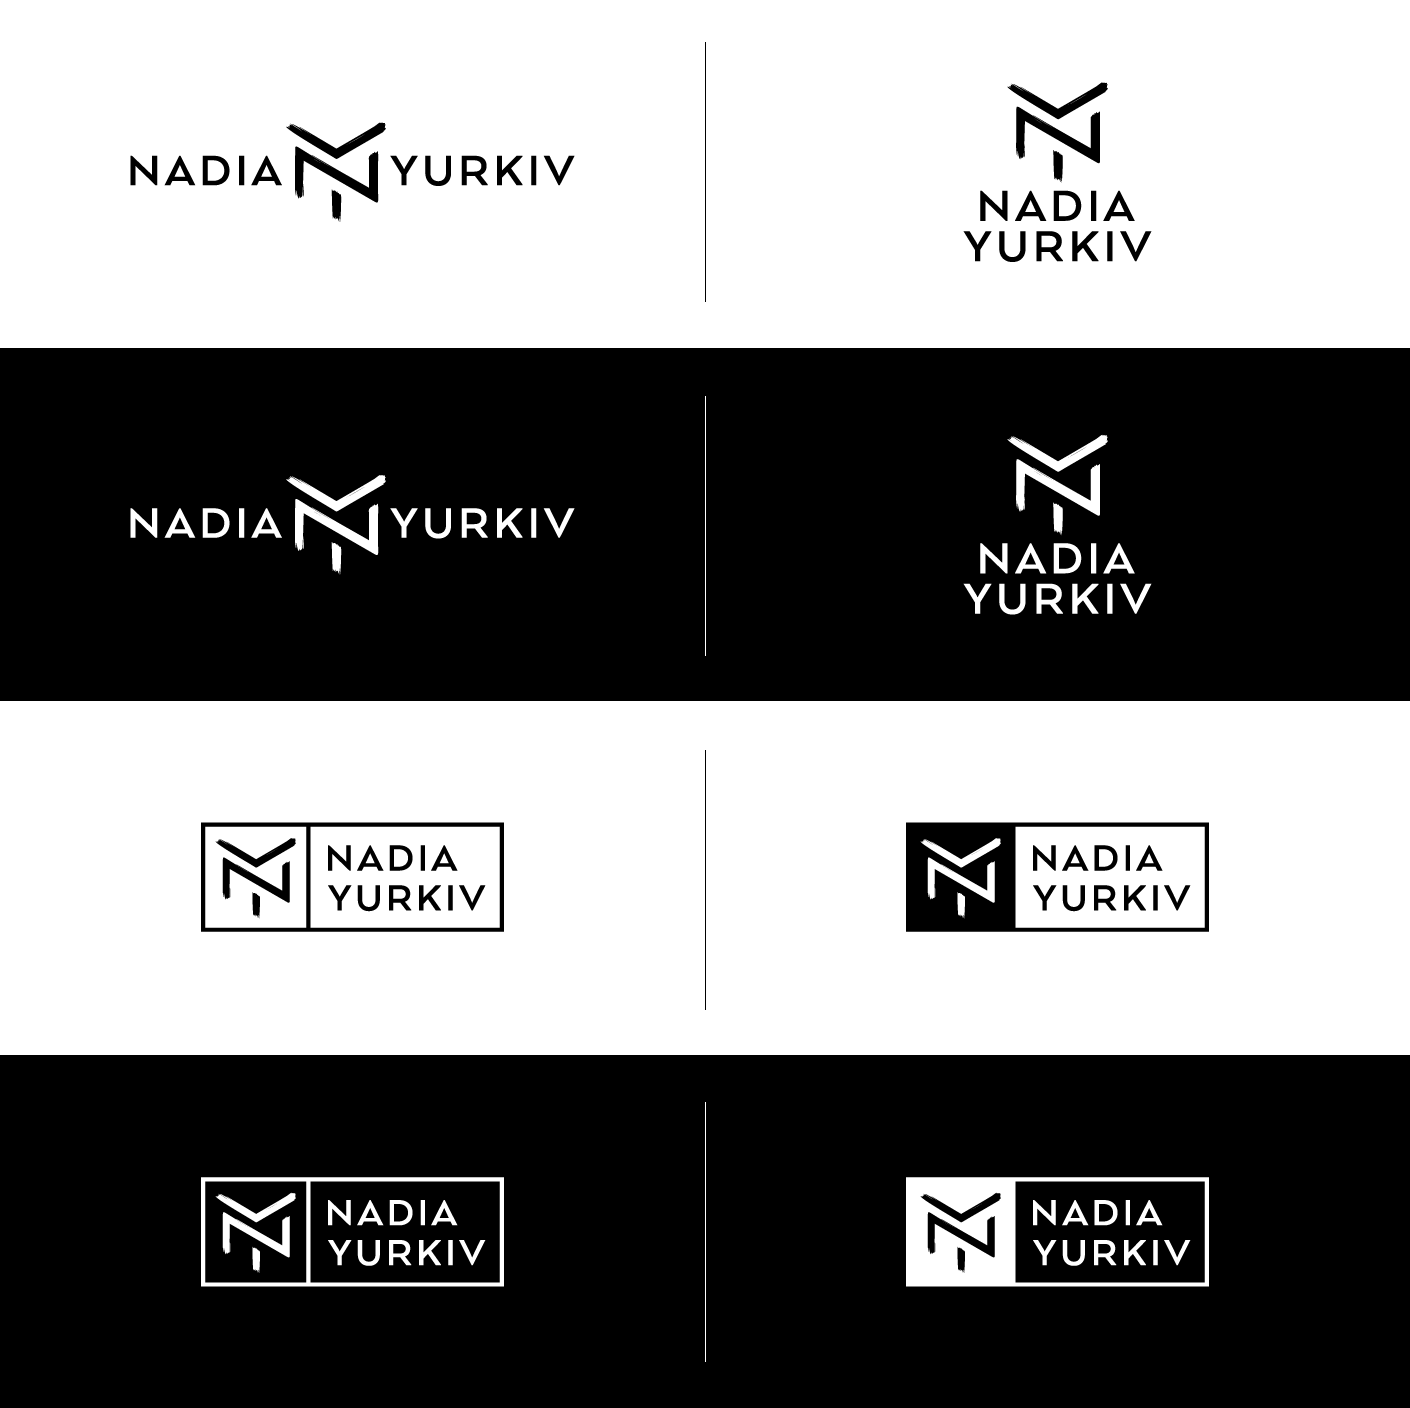 Nadia-Yurkiv-logo-variations